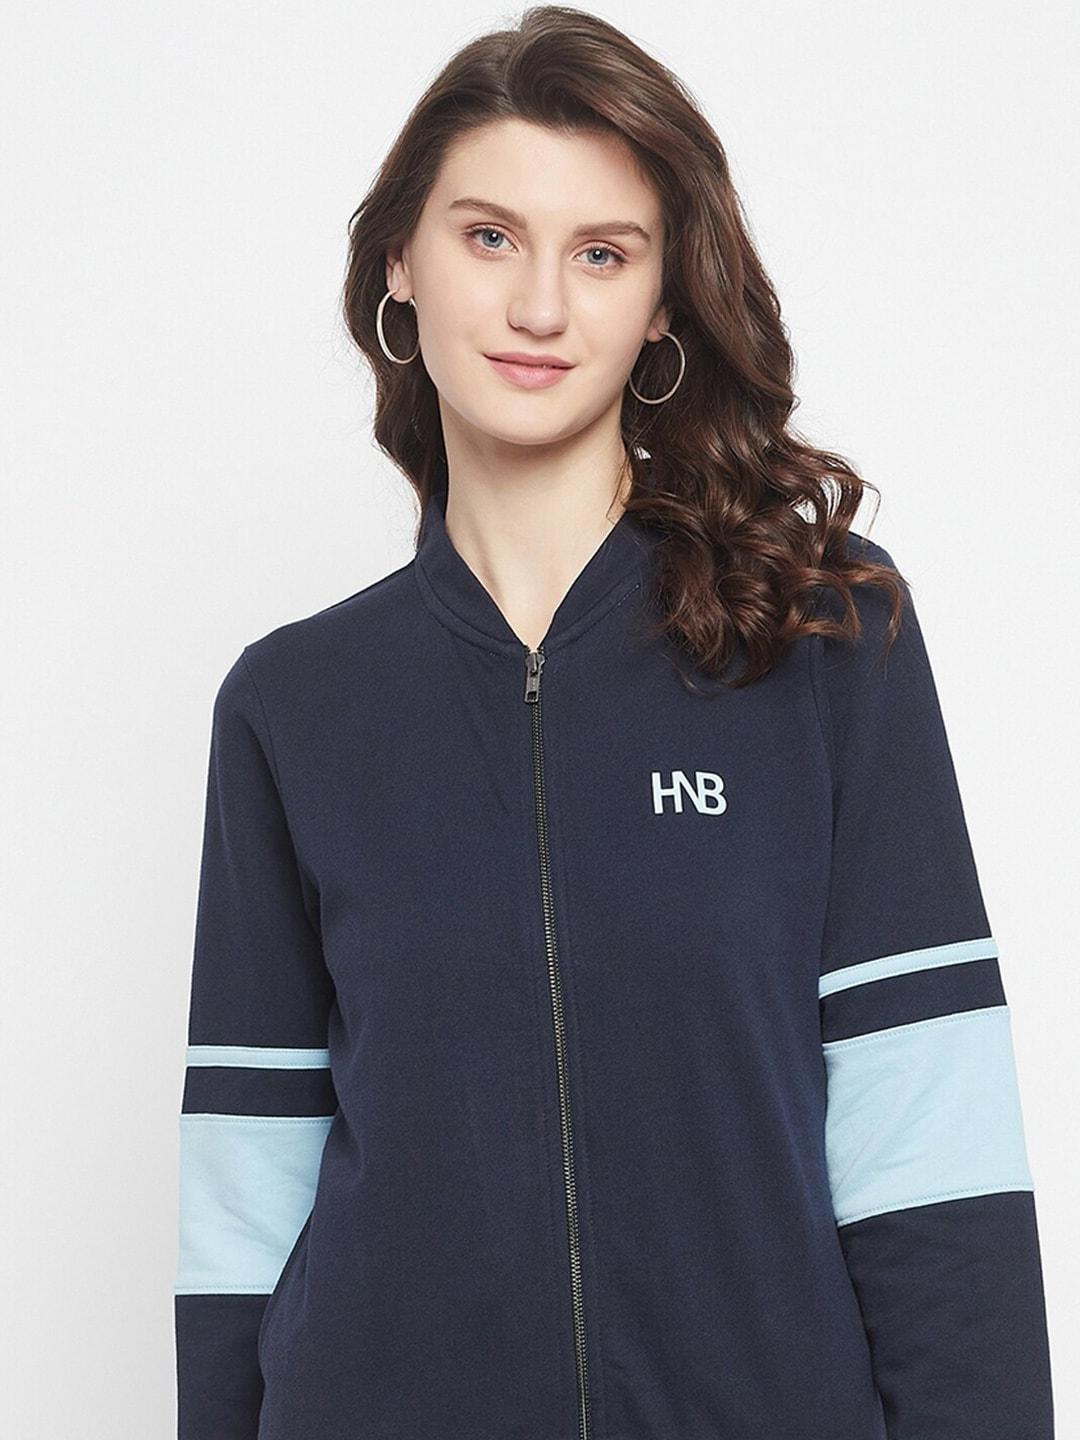 harbor-n-bay-mock-collar-fleece-sweatshirt